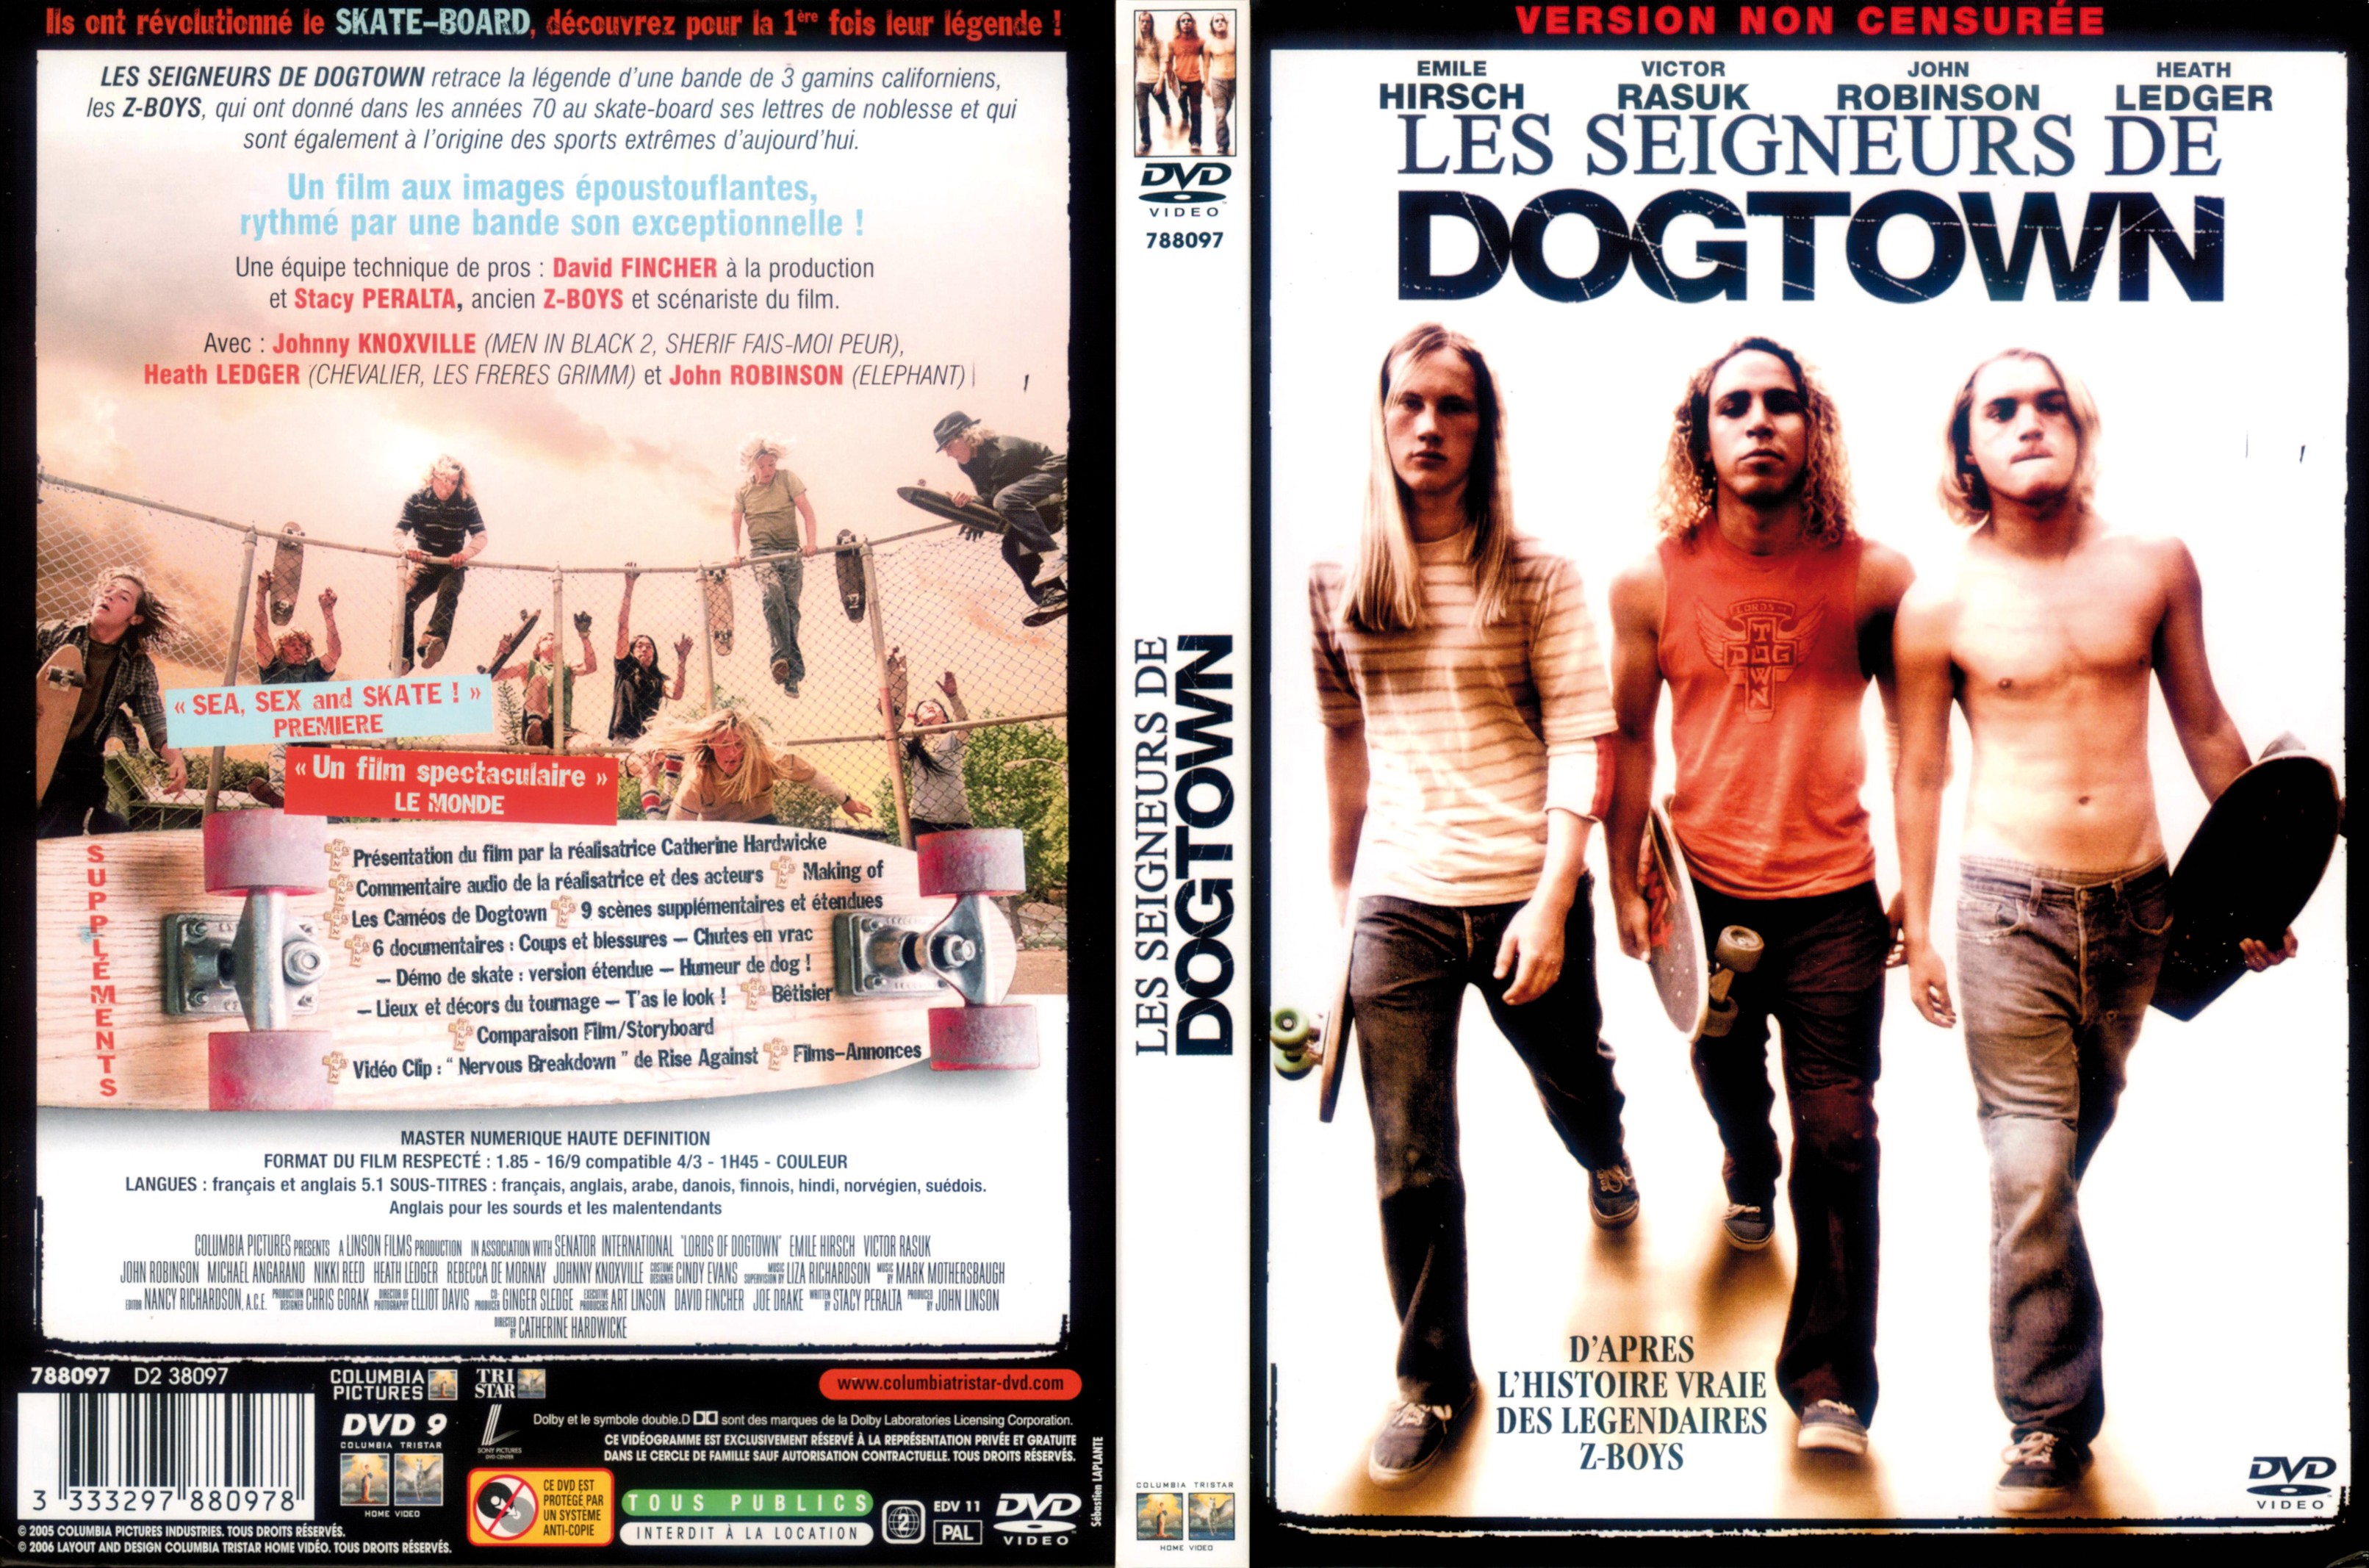 Jaquette DVD Les seigneurs de Dogtown